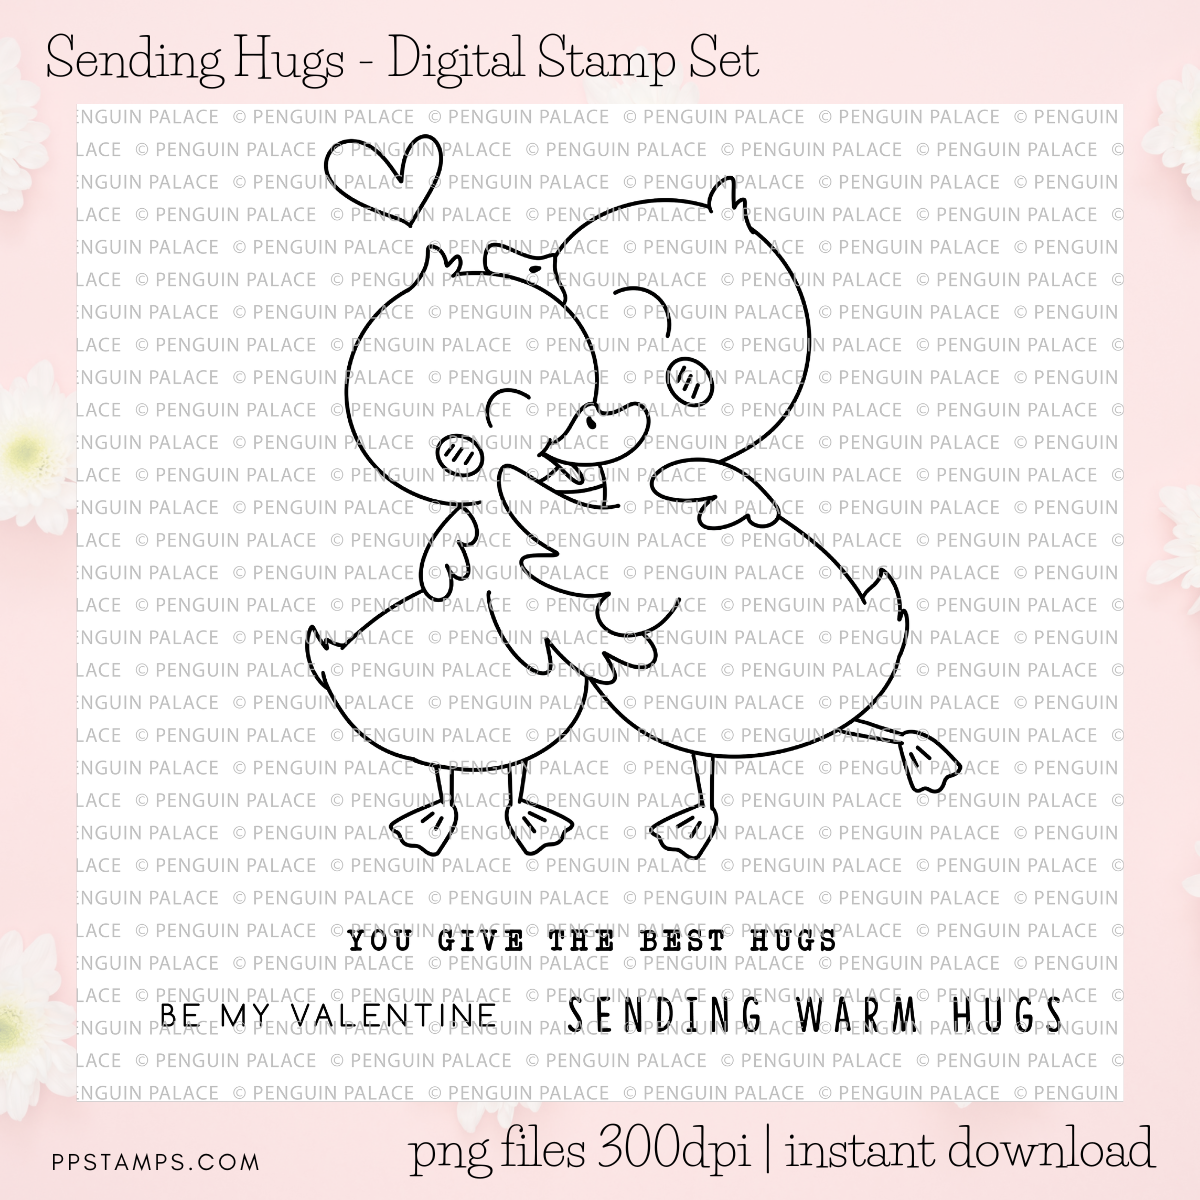 Sending Hugs - Digital Stamp